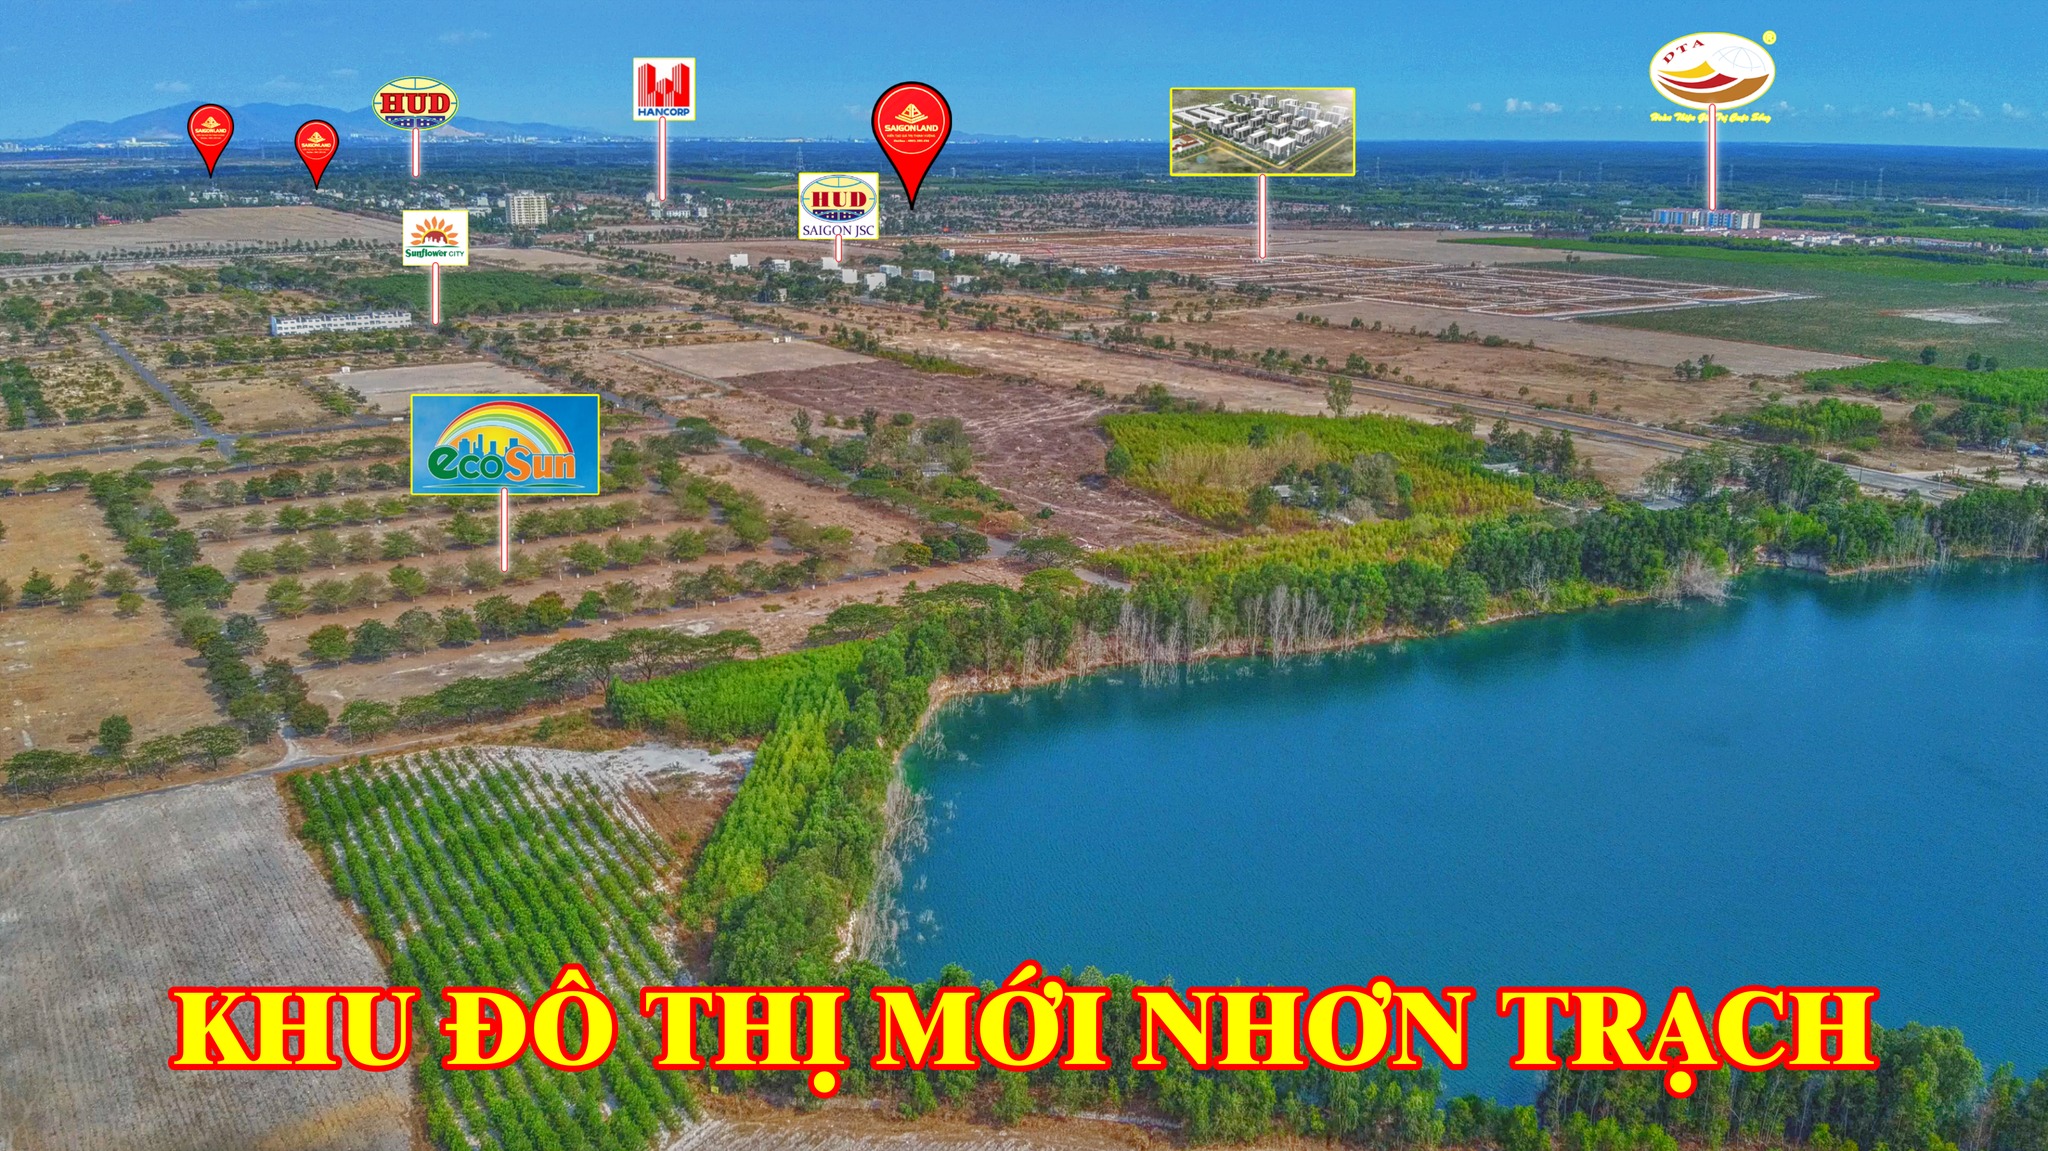 Saigonland Nhơn Trạch - Mua bán đất Dự án Hud Nhơn Trạch Đồng Nai và Khu đô thị mới Nhơn Trạch - Ảnh 2